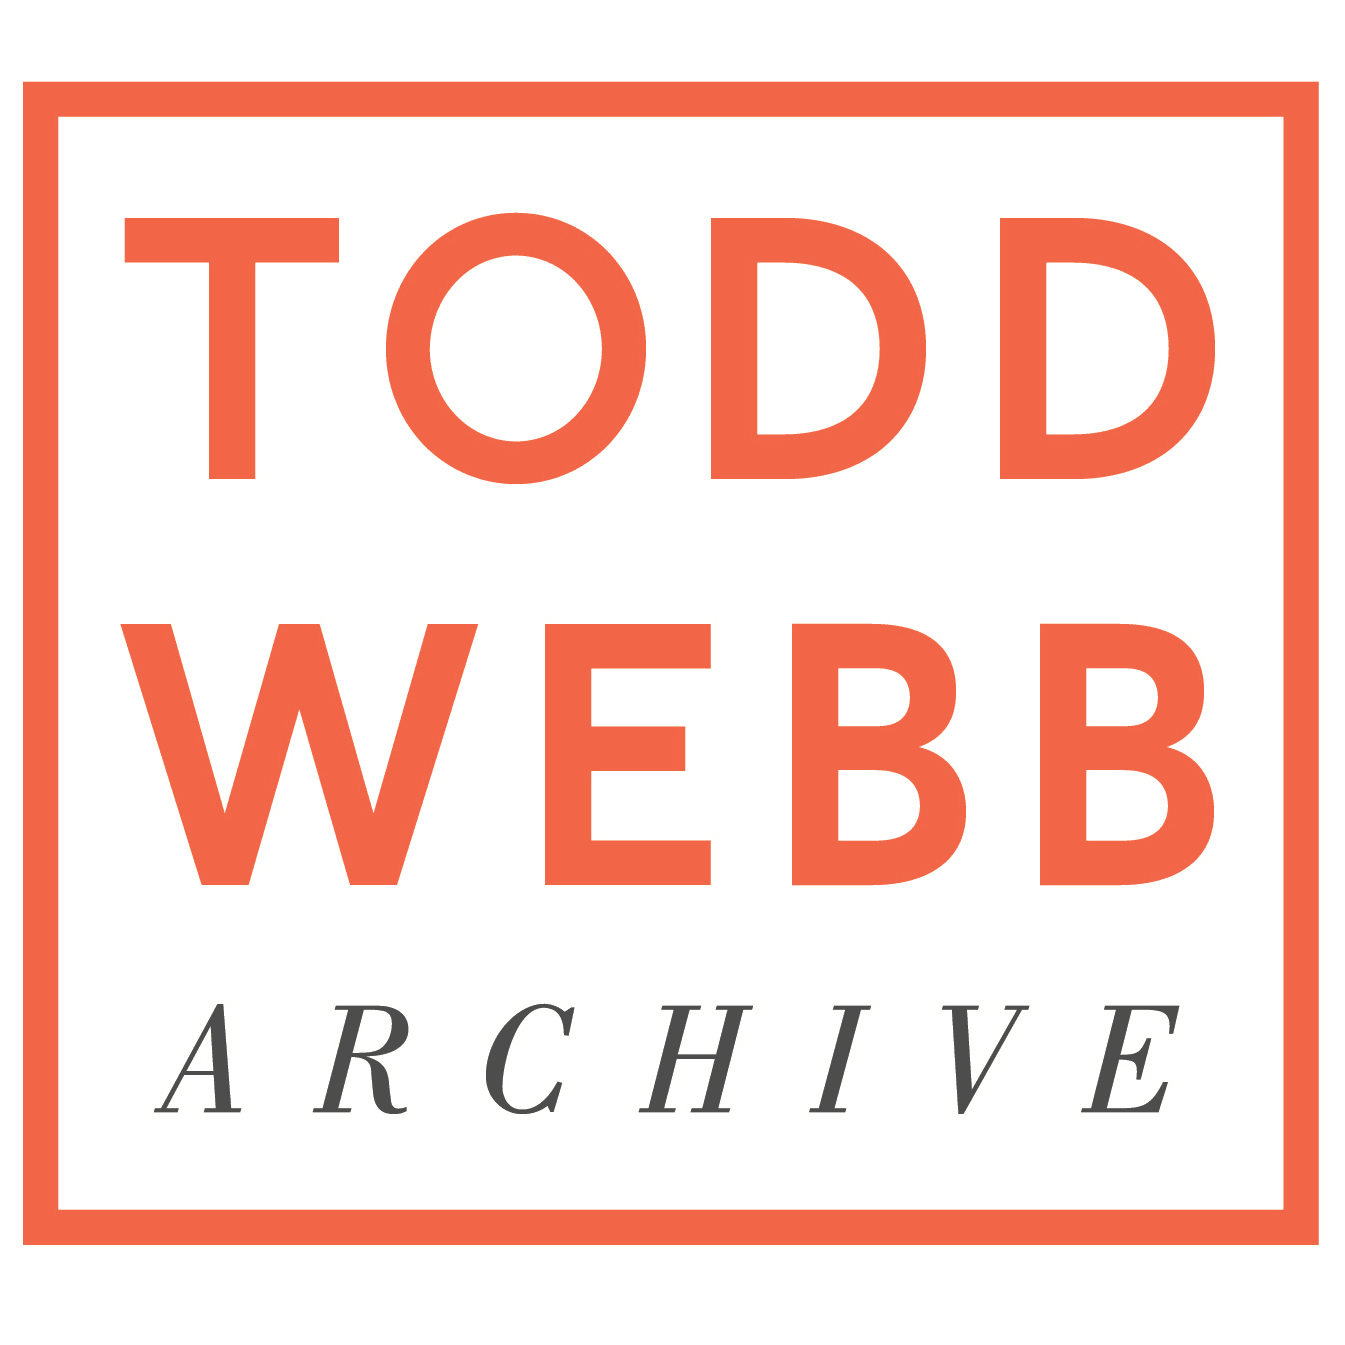 Todd Webb Archive company logo